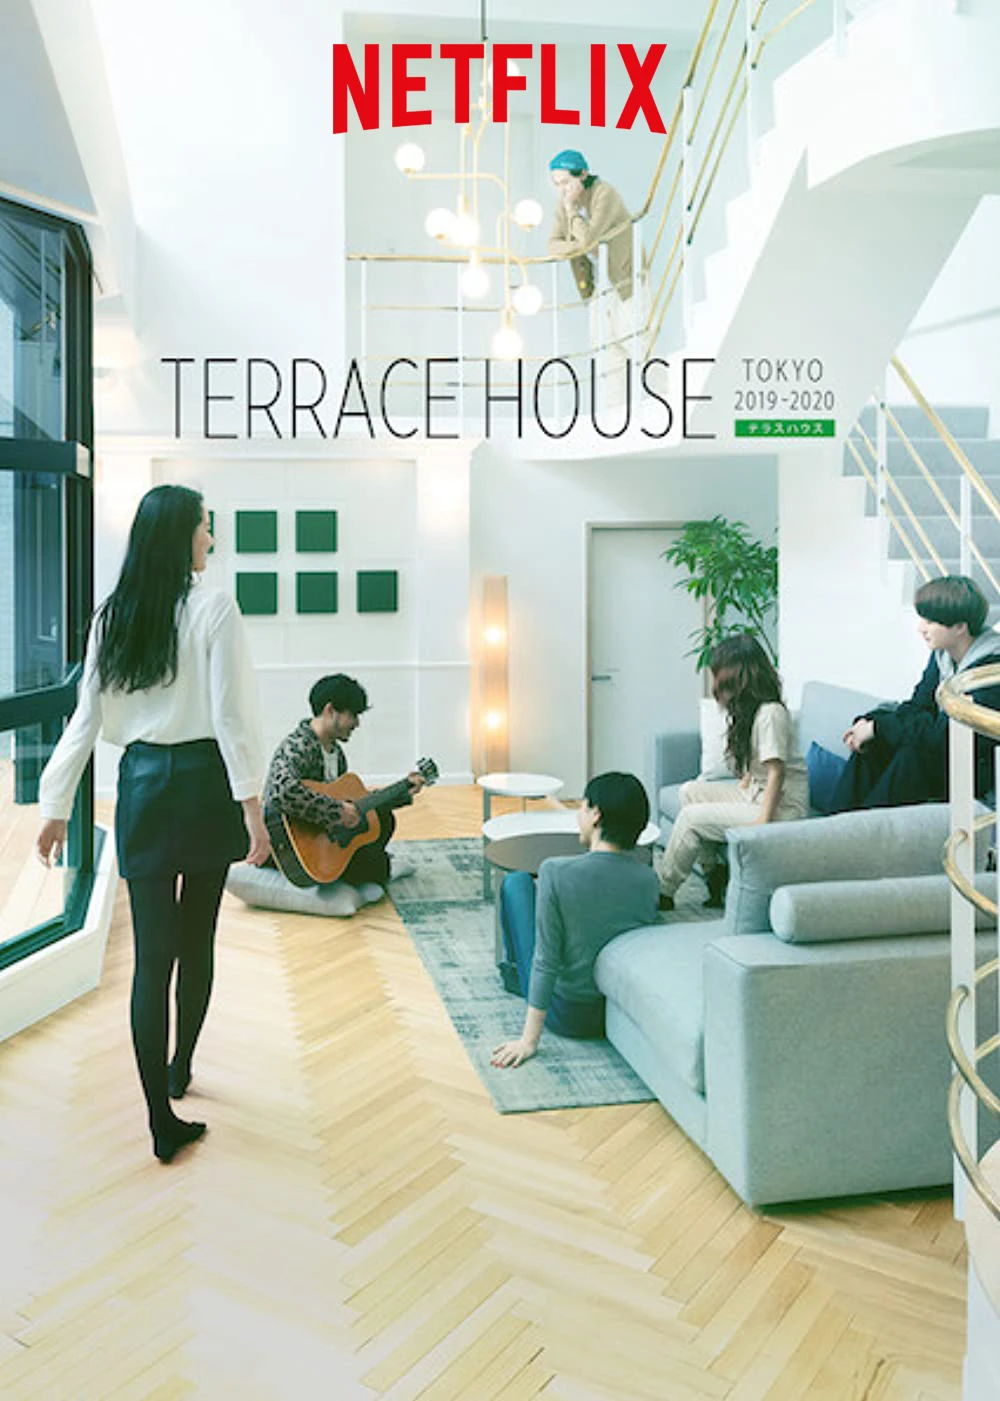 Terrace House: Tokyo 2019-2020 (Phần 2) | Terrace House: Tokyo 2019-2020 (Season 2) (2019)